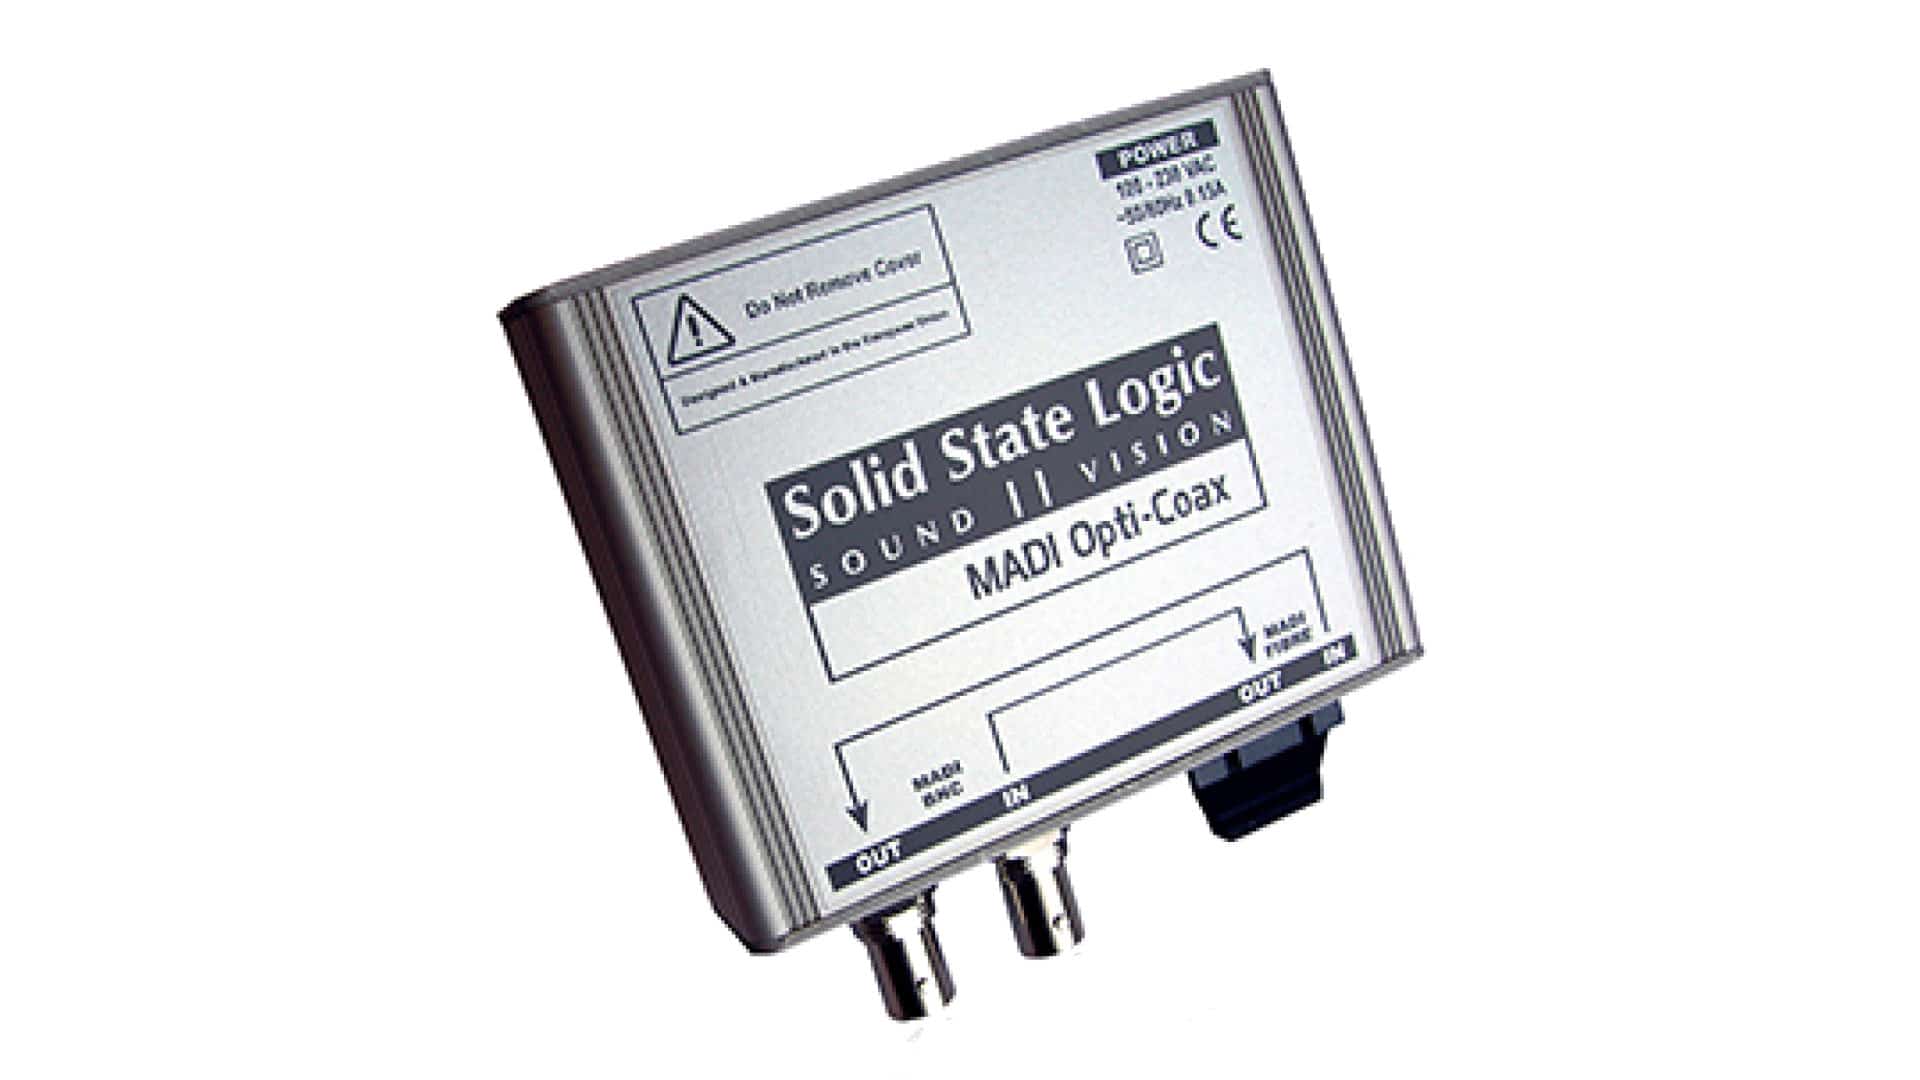 Konwerter SSL MADI-Opti-Coax